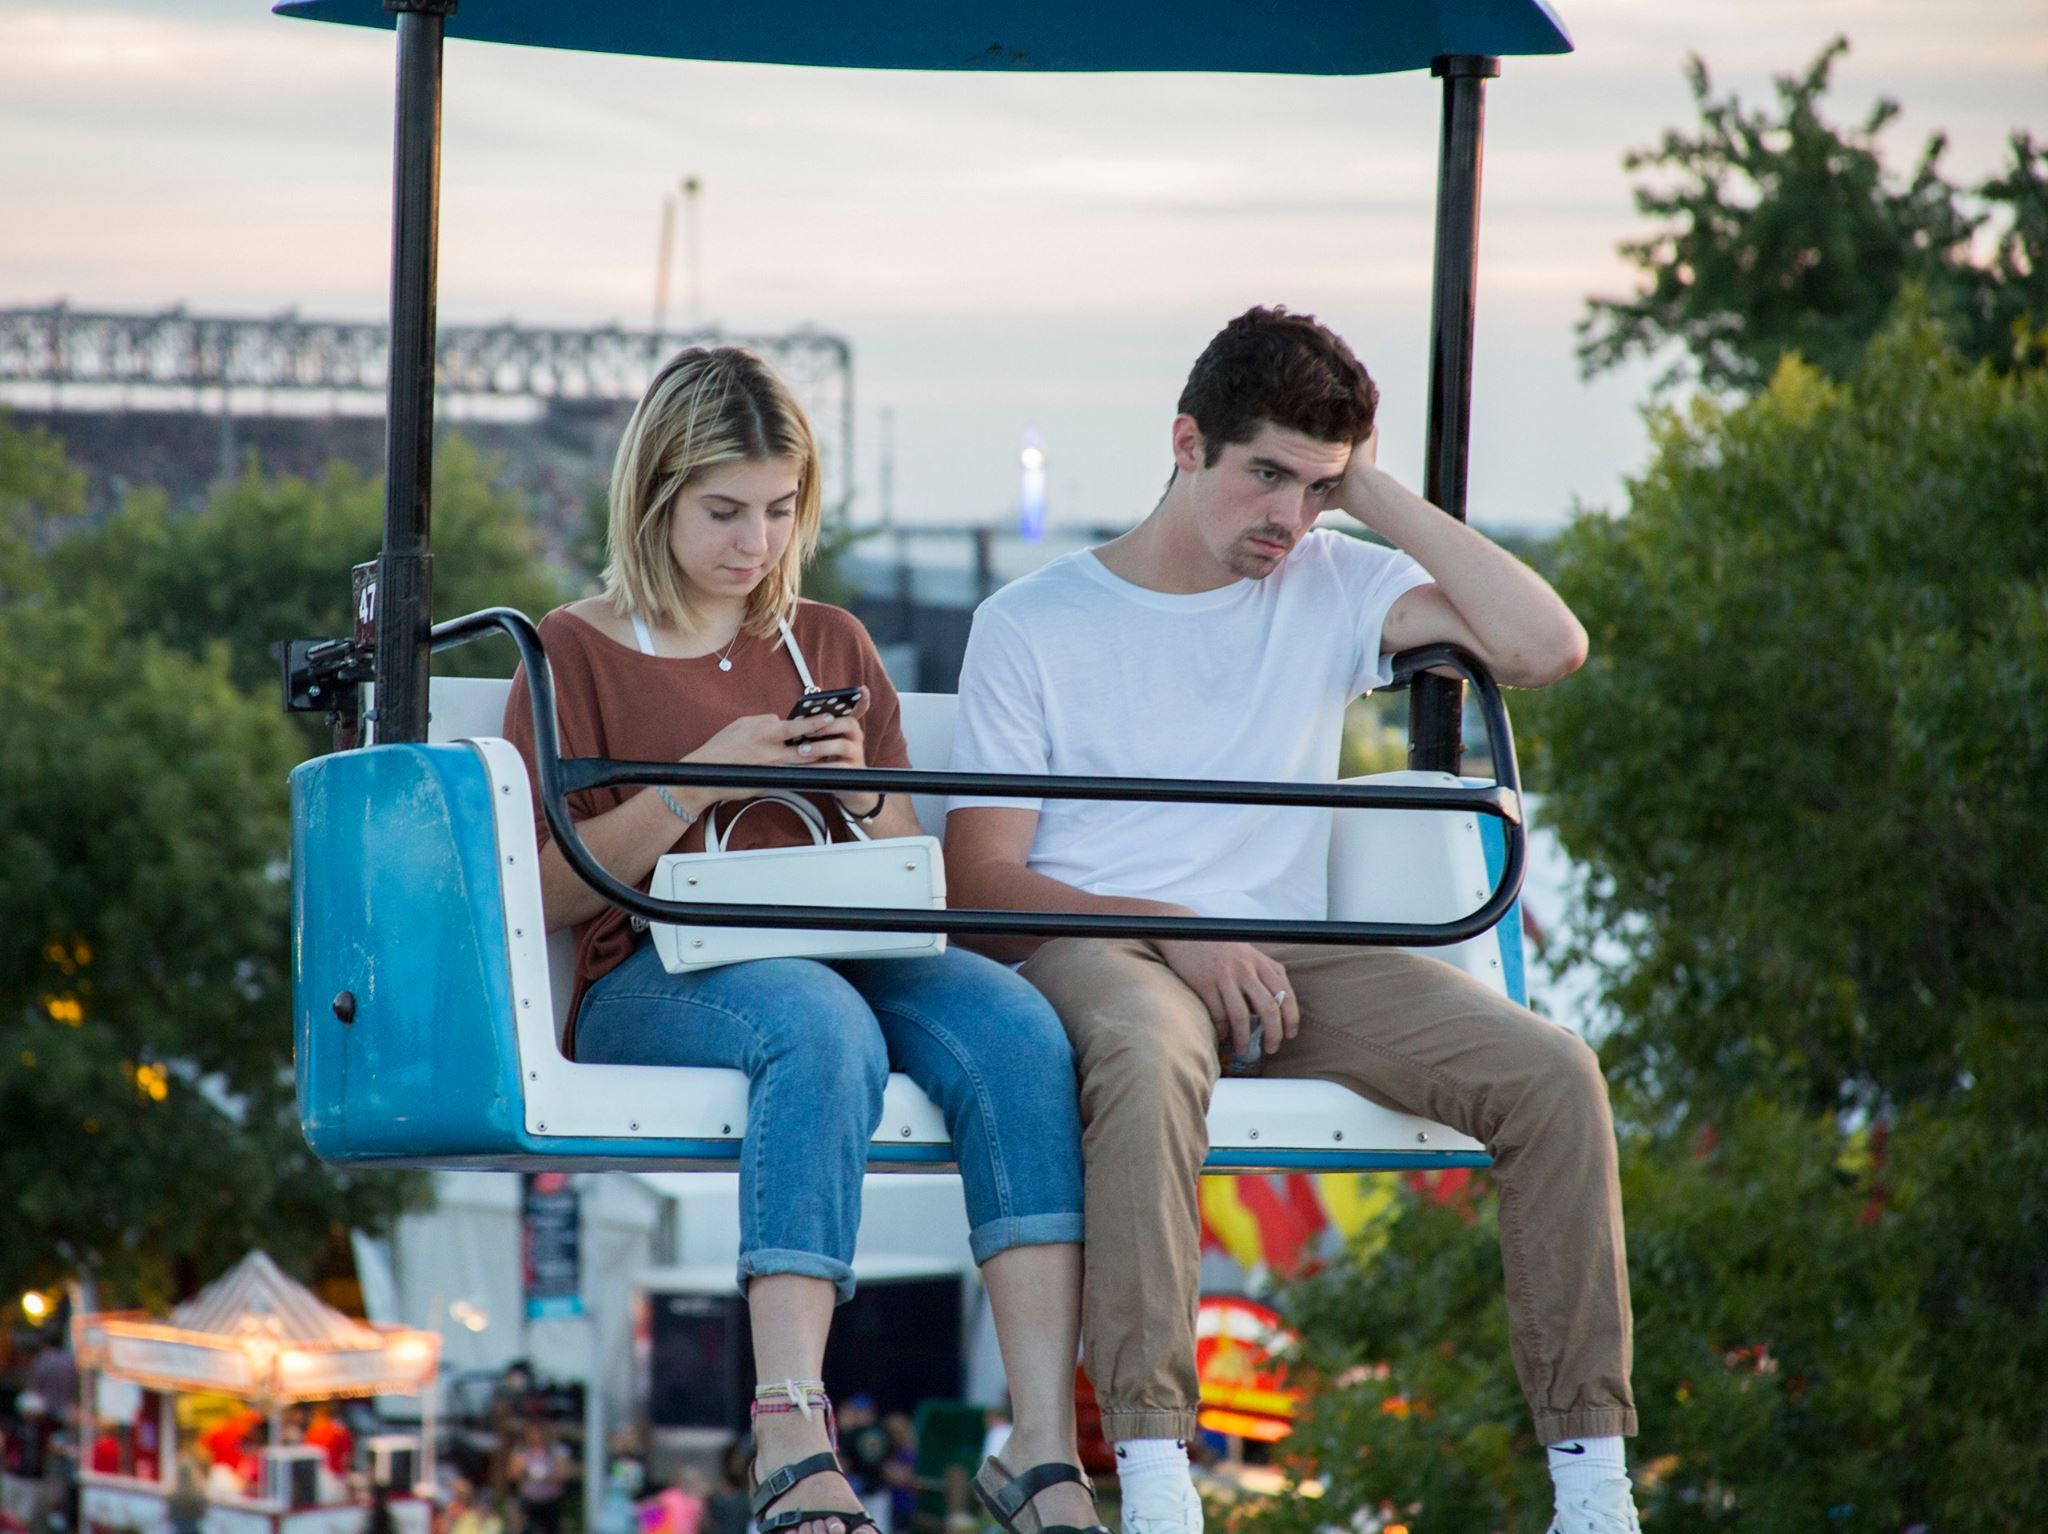 PsBattle: Couple enjoying the Minnesota State Fair.